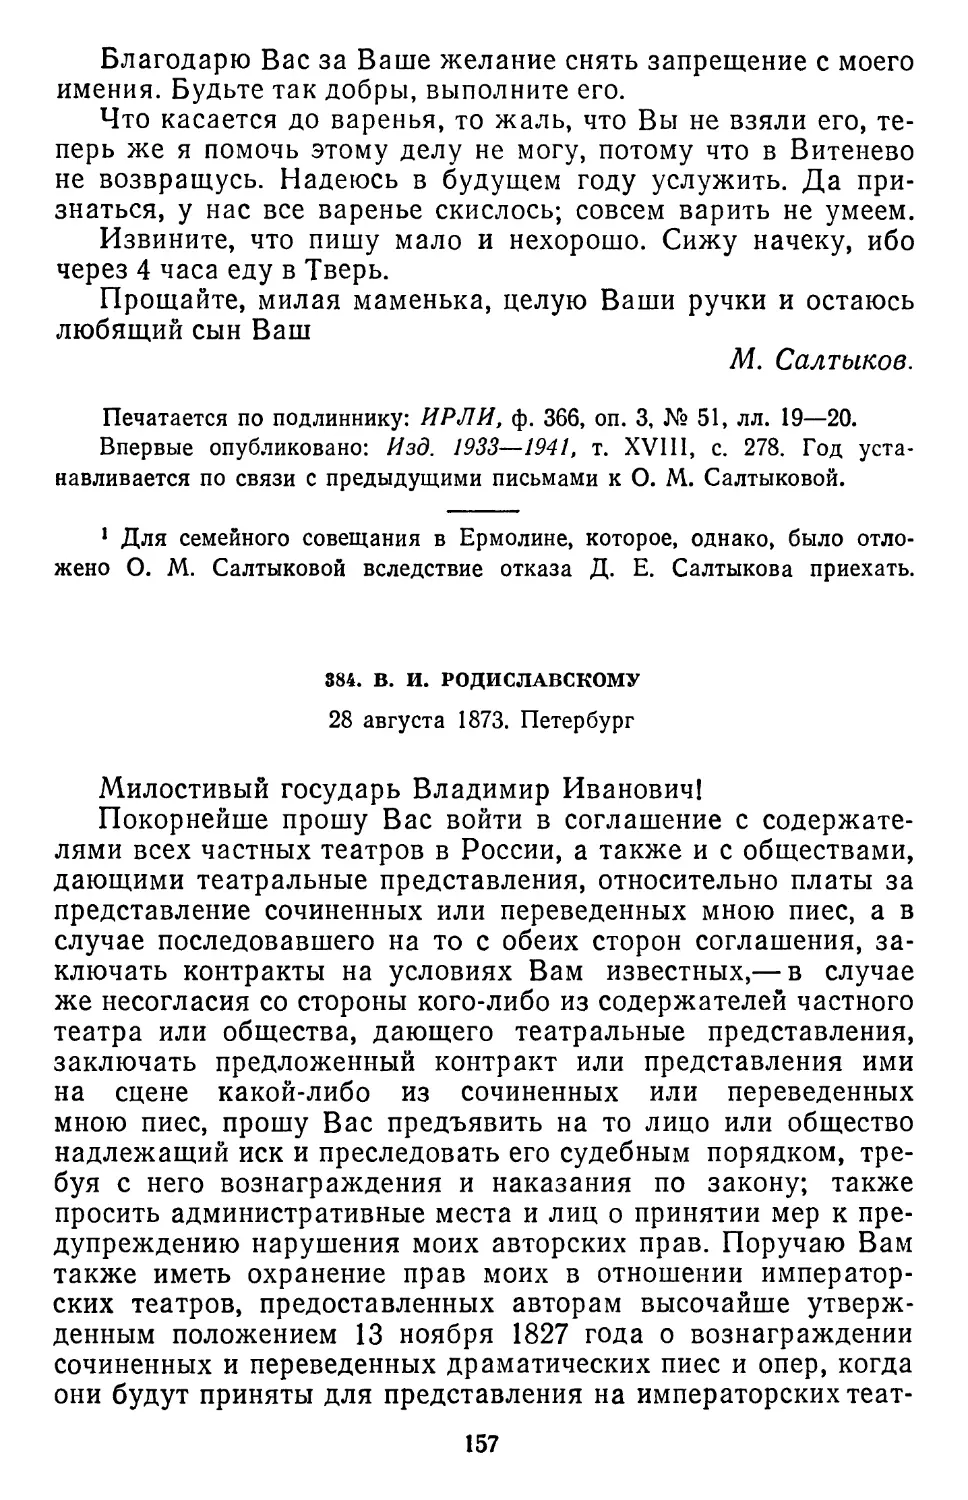 384.В.И. Родиславскому. 28 августа 1873. Петербург .